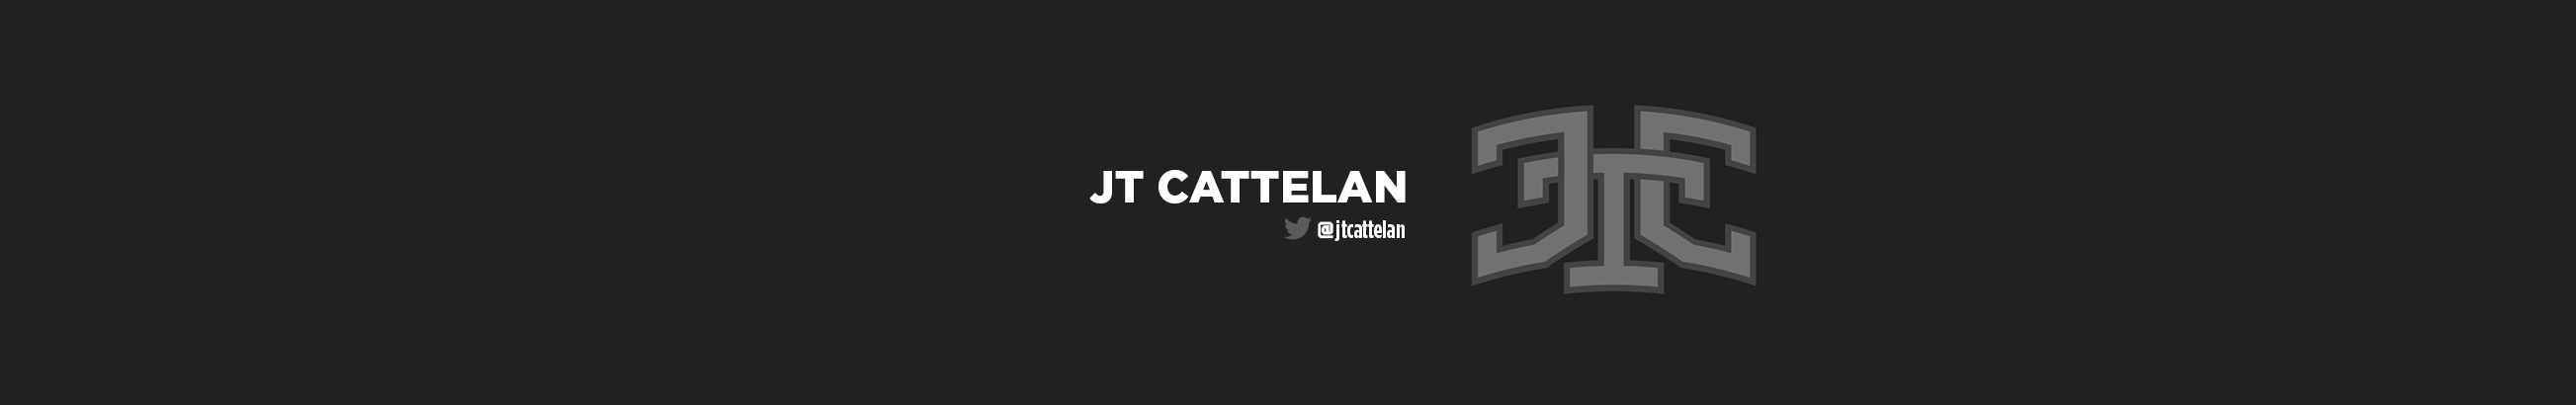 JT Cattelan's profile banner